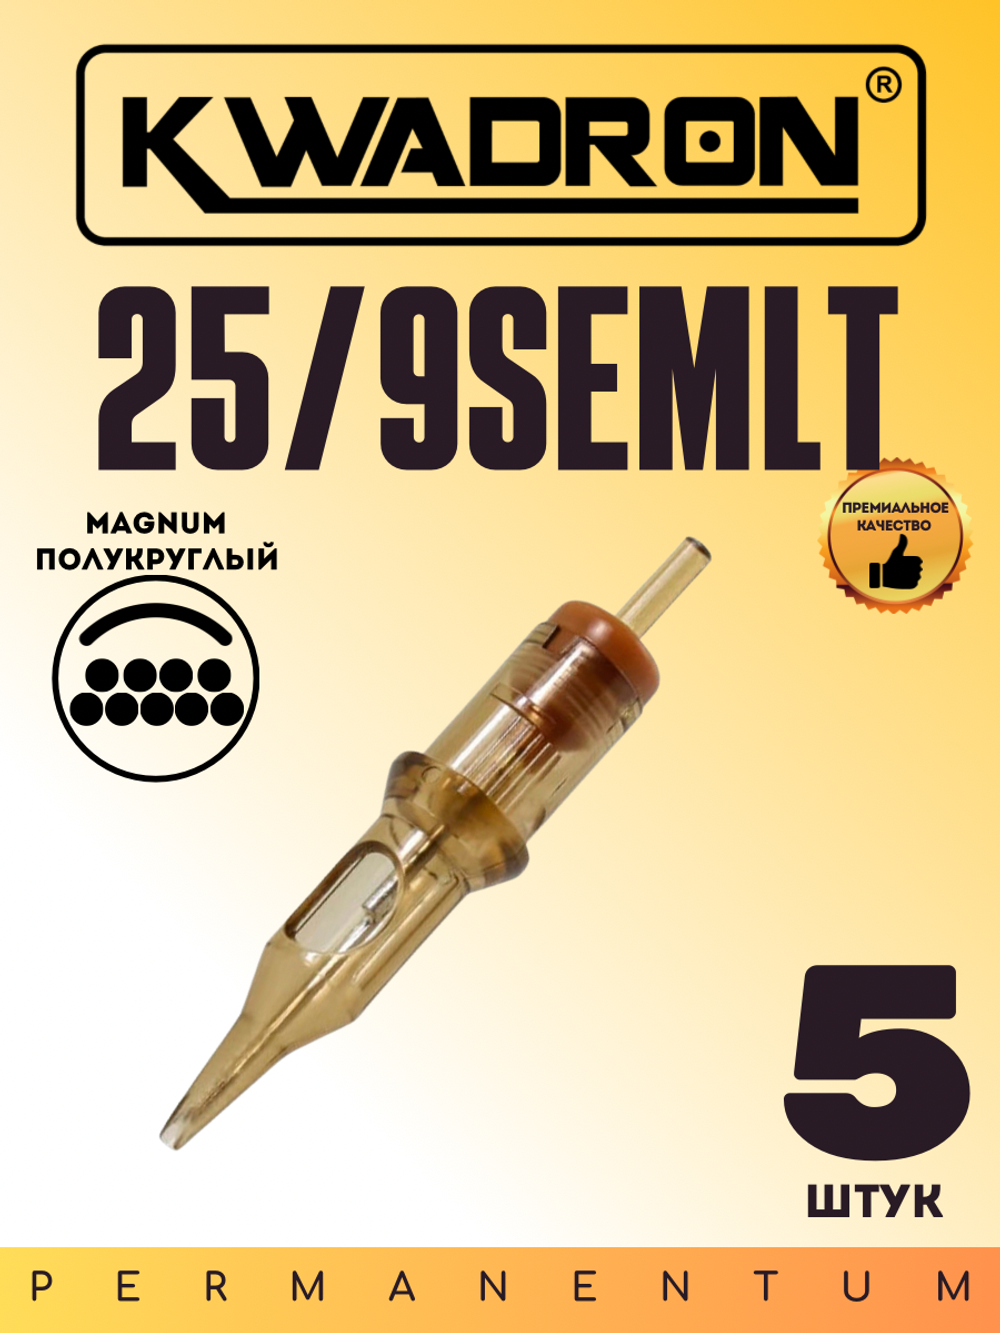 Картридж для татуажа "KWADRON Soft Edge Magnum 25/9SEMLT" блистер 5 шт.